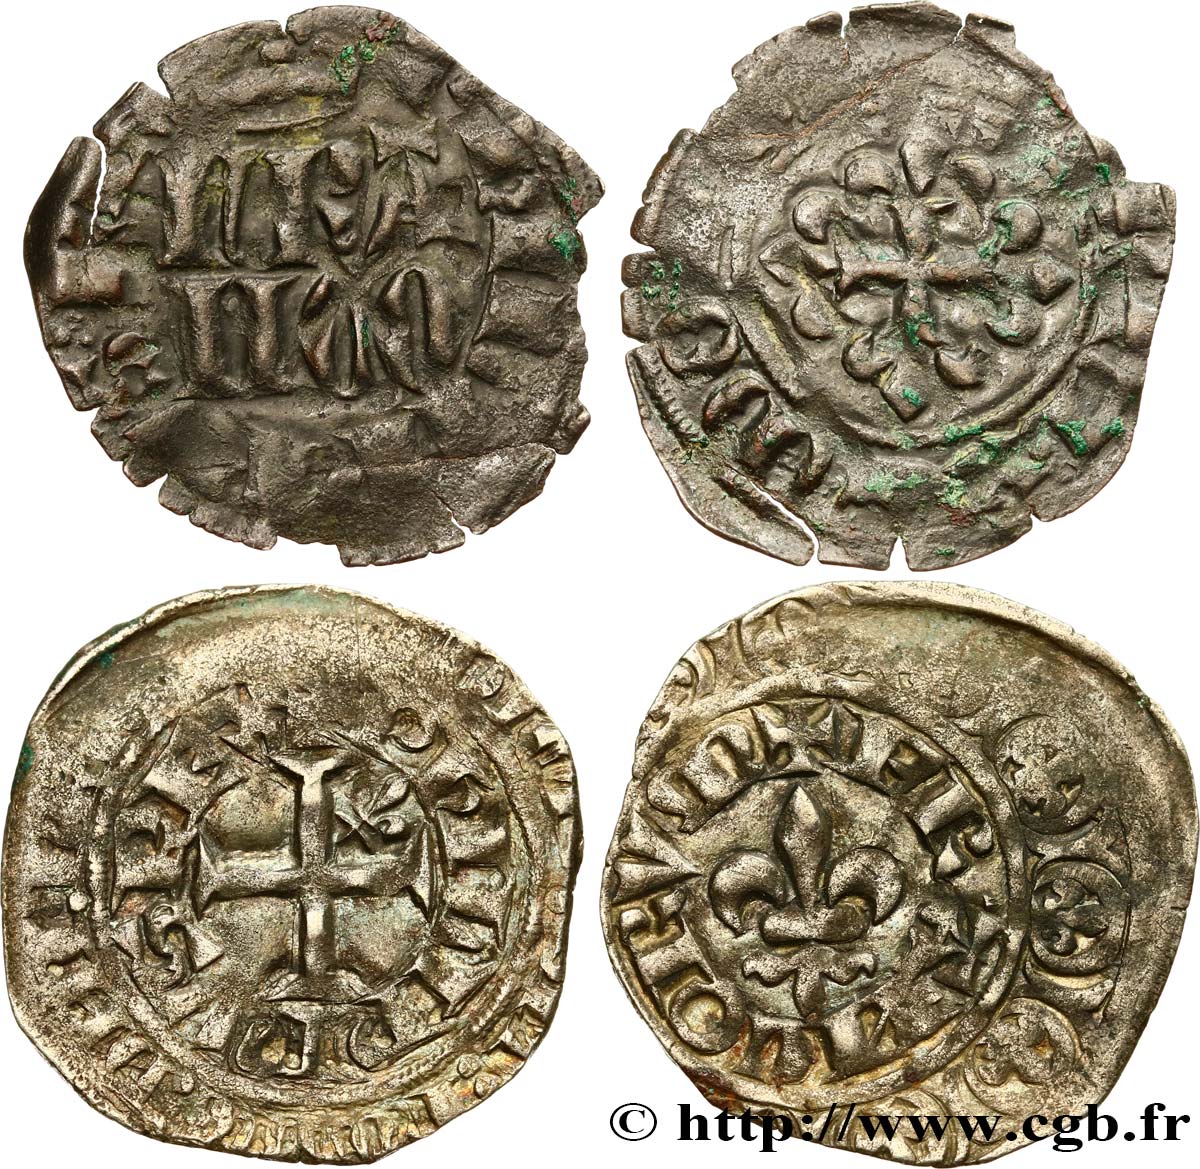 PHILIPP VI OF VALOIS Lot de 2 monnaies royales n.d. Ateliers divers fSS